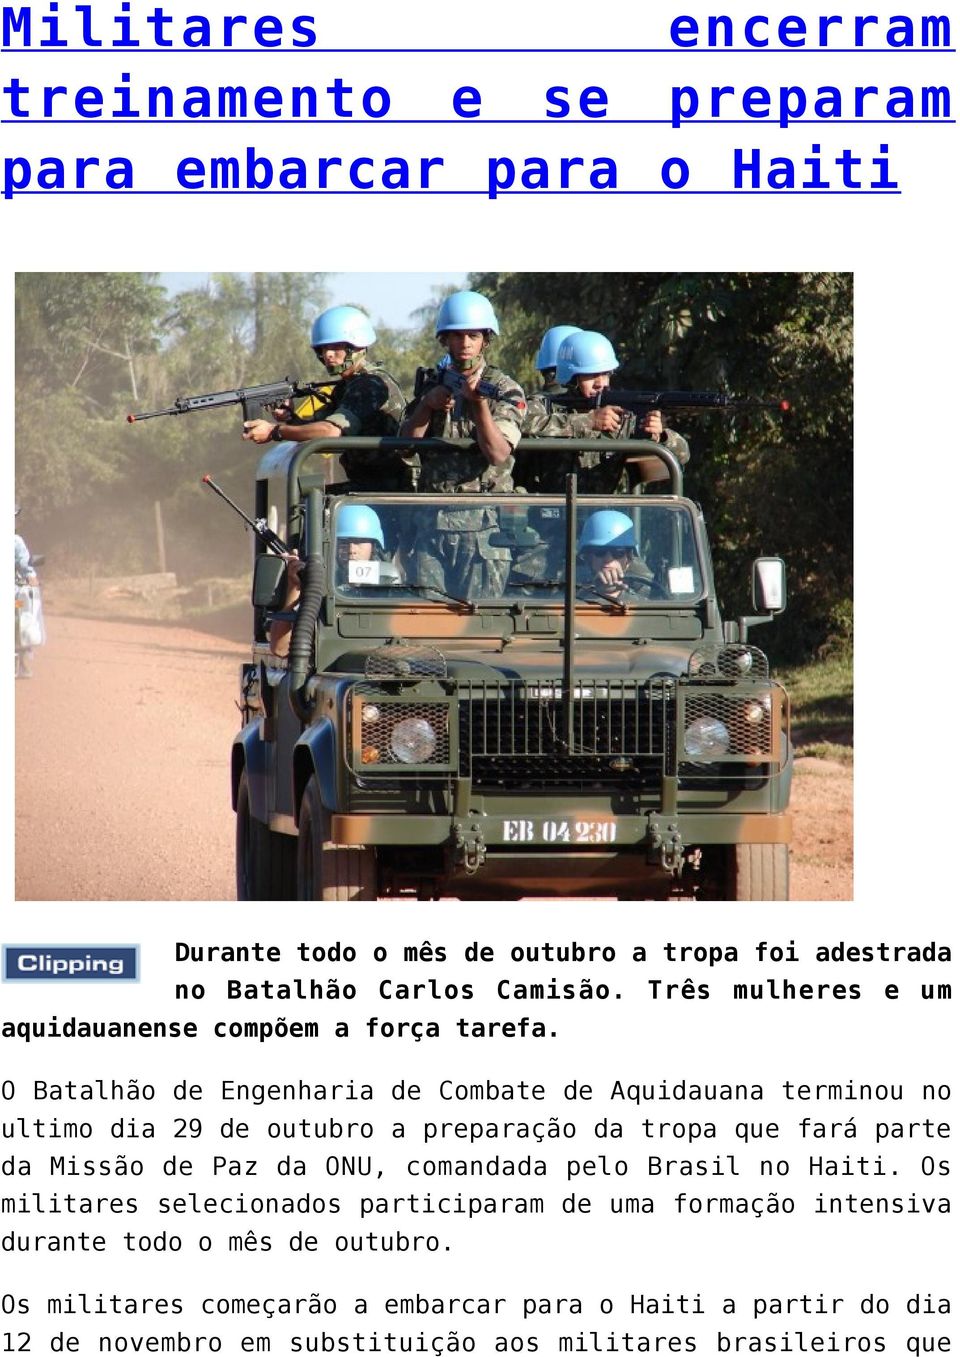 O Batalhão de Engenharia de Combate de Aquidauana terminou no ultimo dia 29 de outubro a preparação da tropa que fará parte da Missão de Paz da ONU,